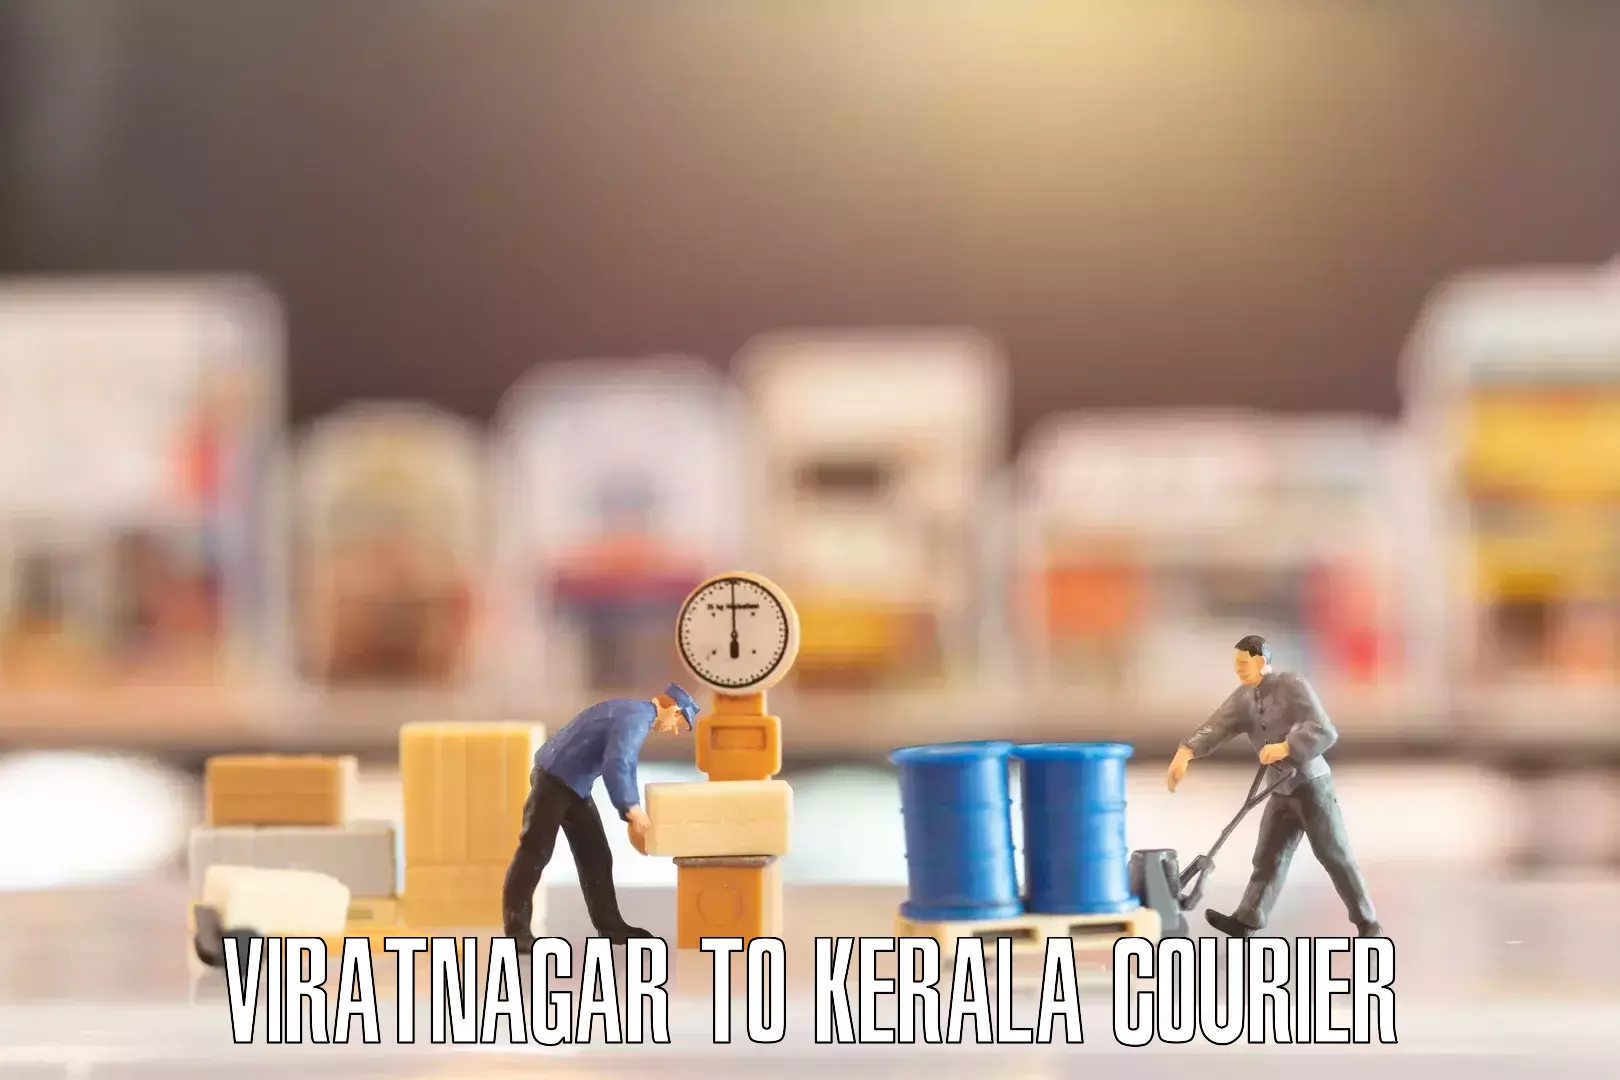 Premium furniture transport Viratnagar to Kerala